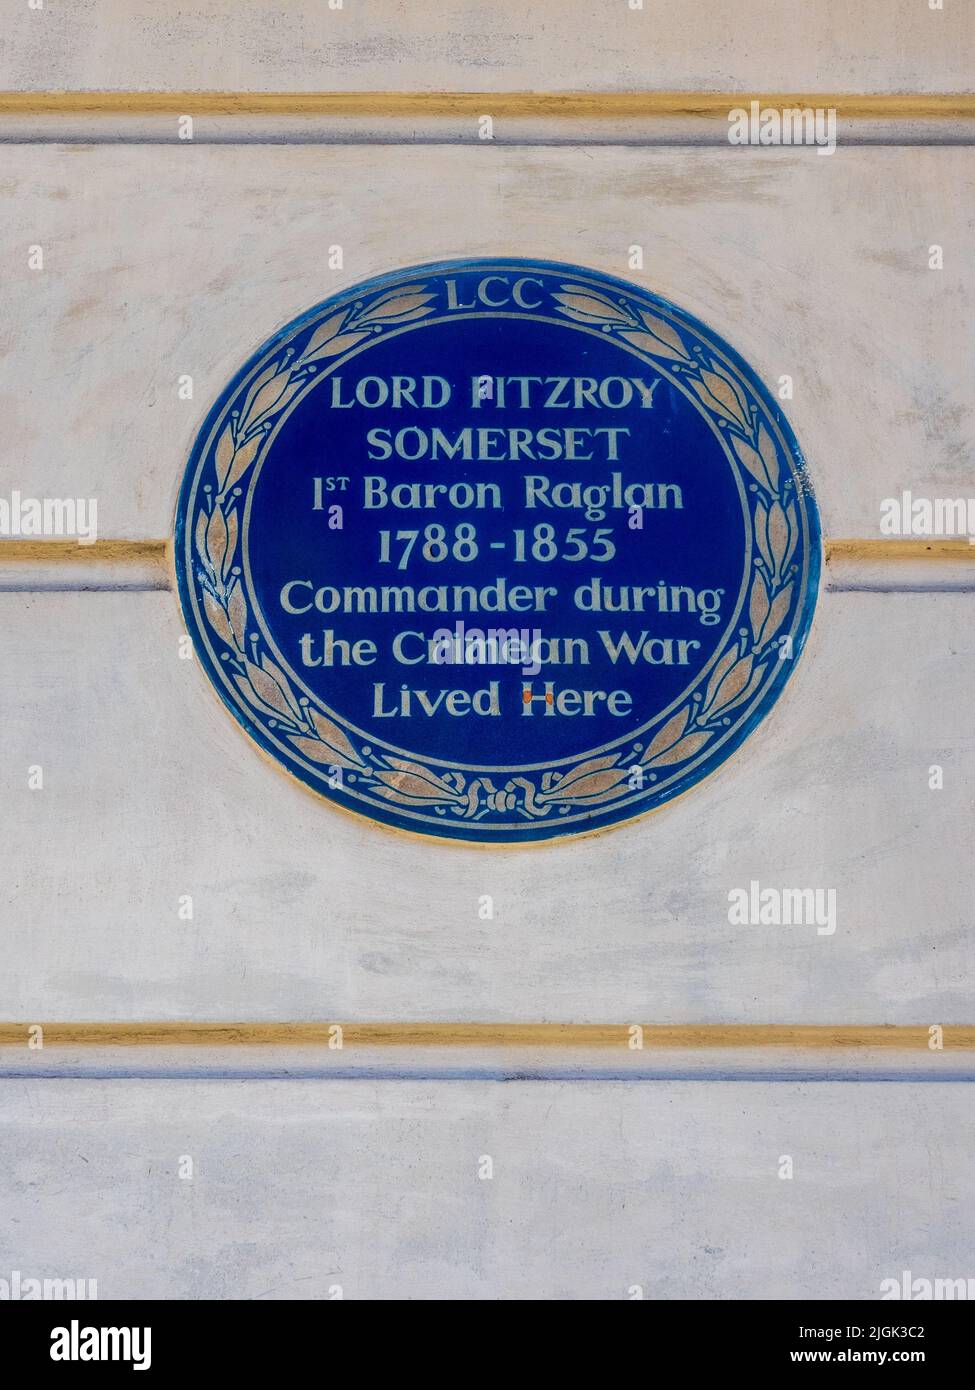 Lord Fitzroy Somerset Blue plaque 5 Stanhope Gate Mayfair, Londres. LORD FITZROY SOMERSET 1st Baron Raglan 1788-1855 Commandant pendant la guerre de Crimée Banque D'Images